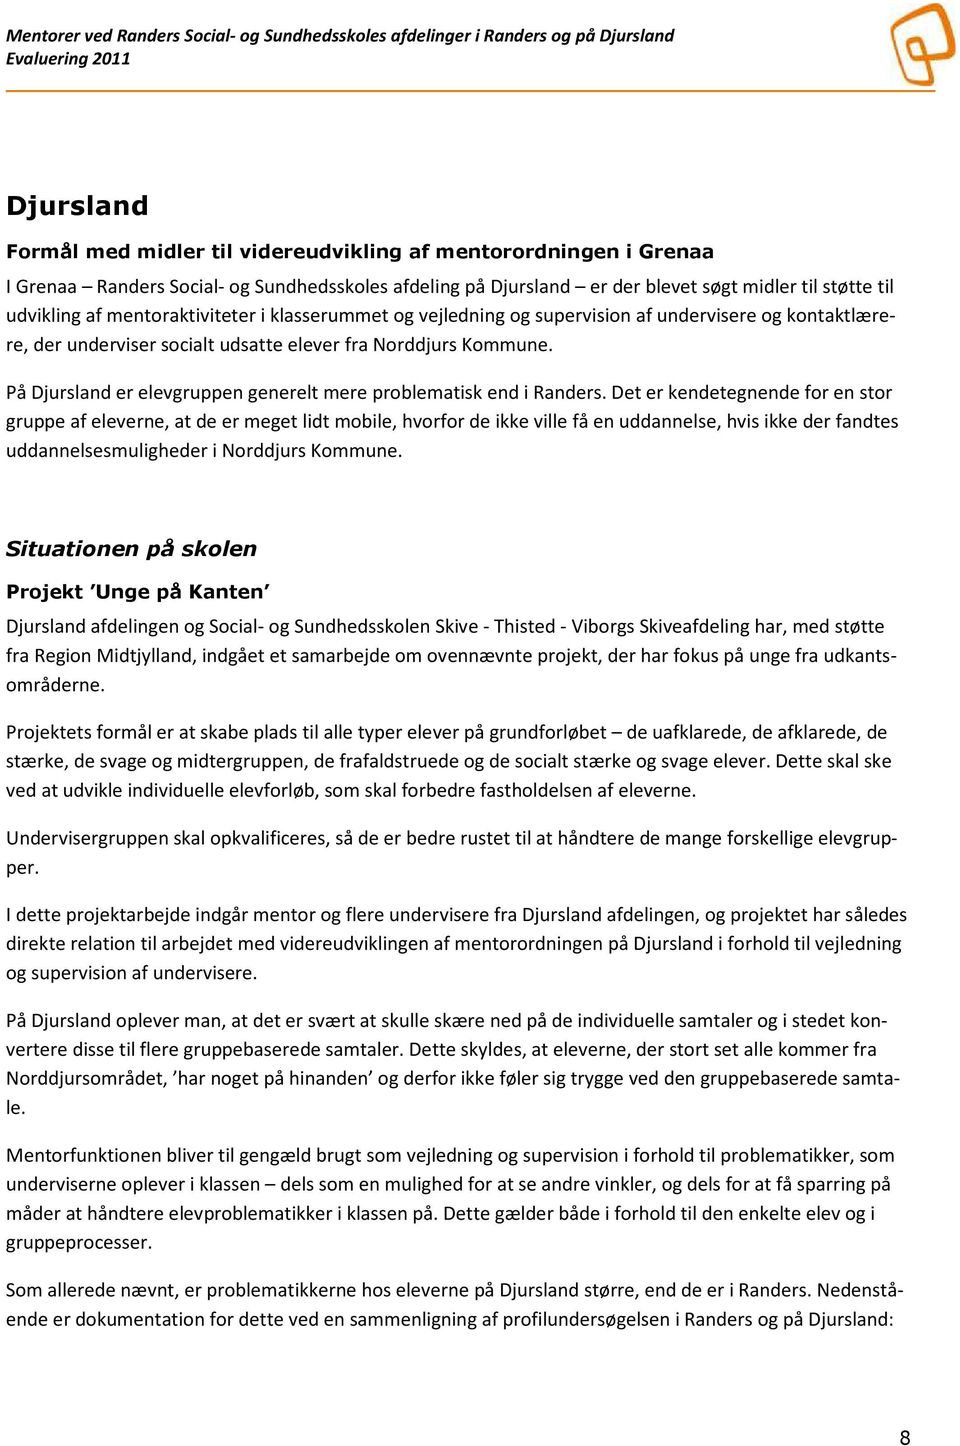 Evaluering mentorordning Randers Social- og Sundhedsskoles afdelinger i og på Djursland - PDF Gratis download